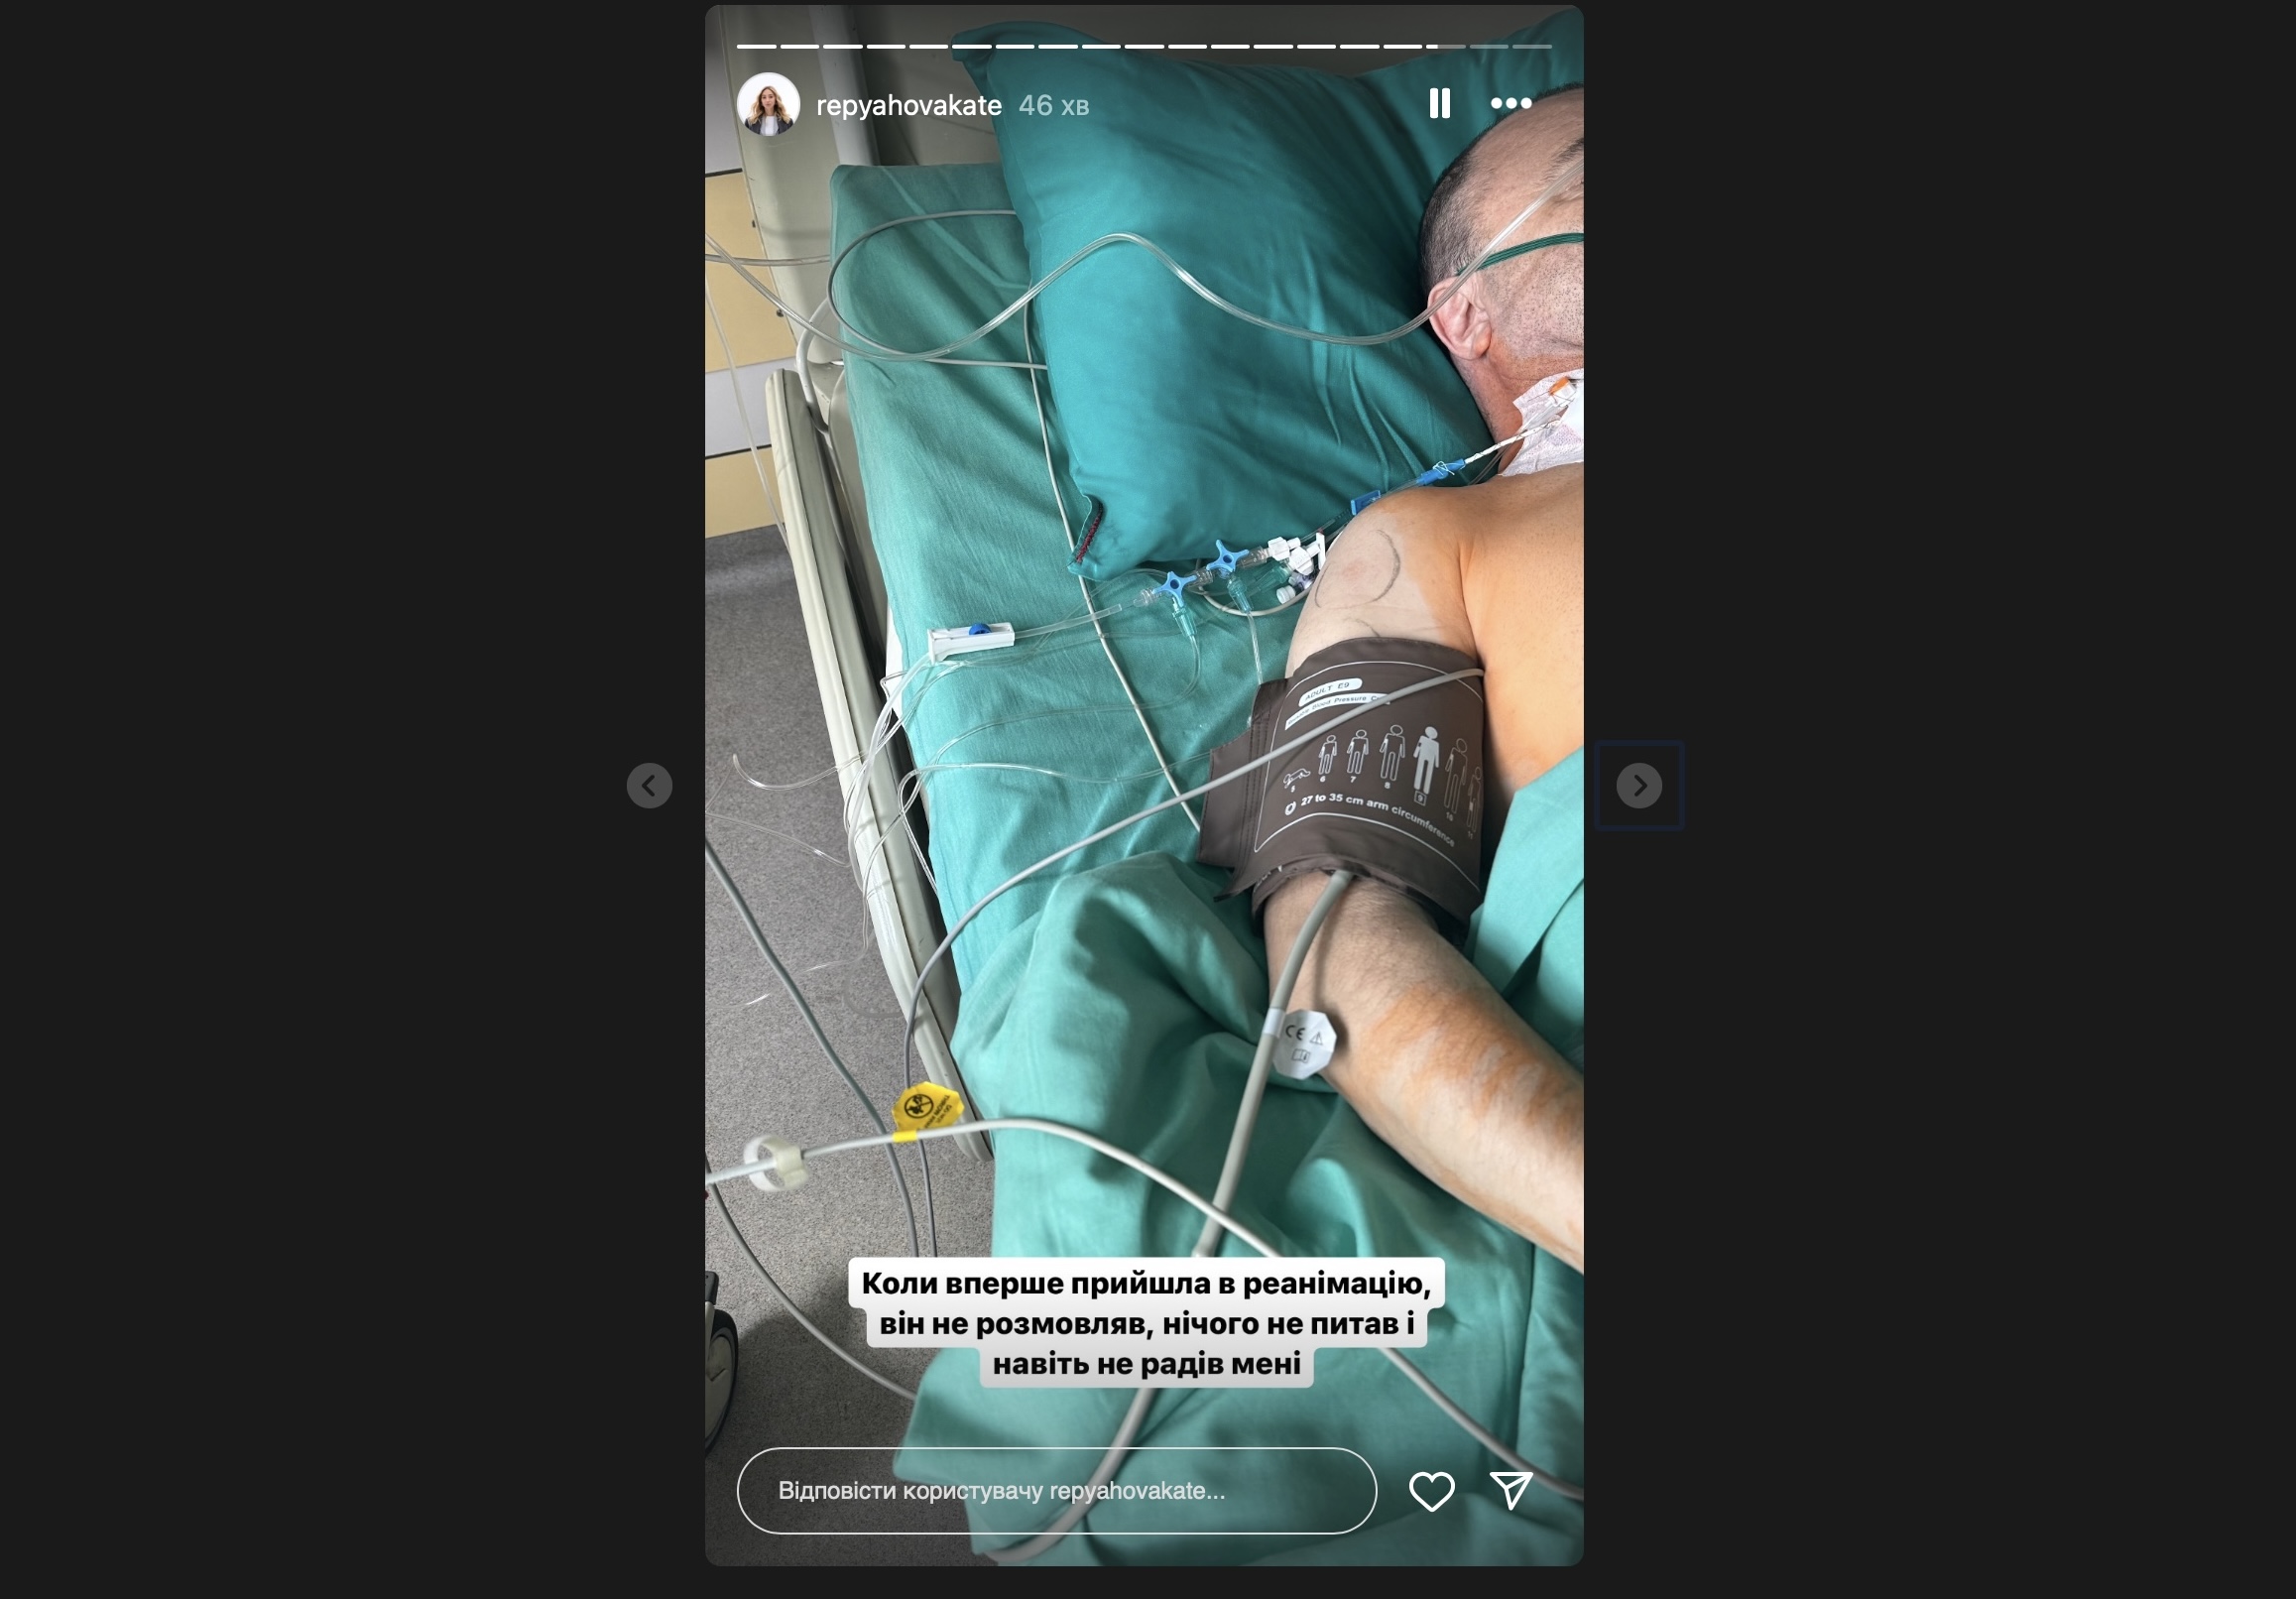 Дружина Віктора Павліка розповіла, що йому зробили операцію на серці. Фото з Instagram @repyahovakate